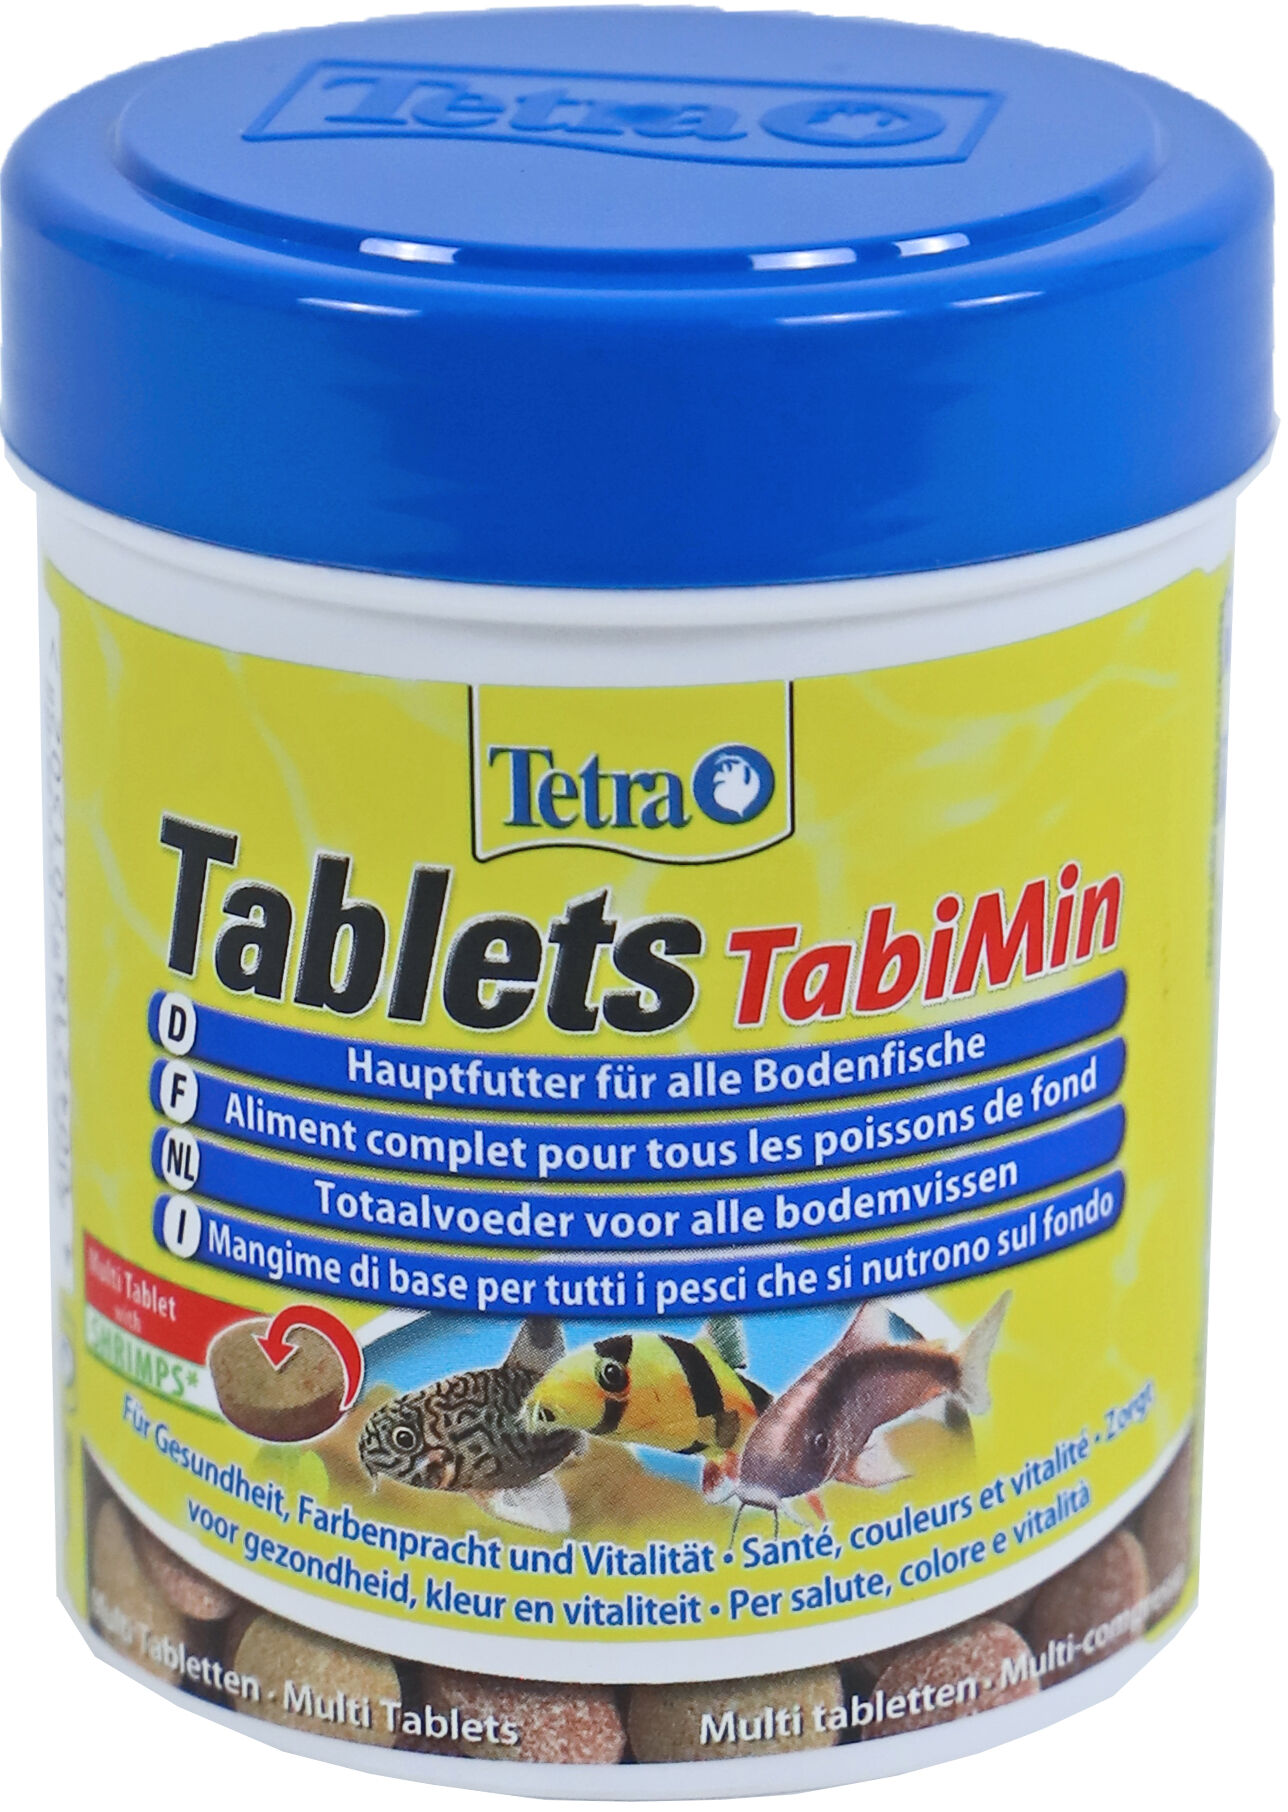 Tablets Tabimin 275 Tabletten